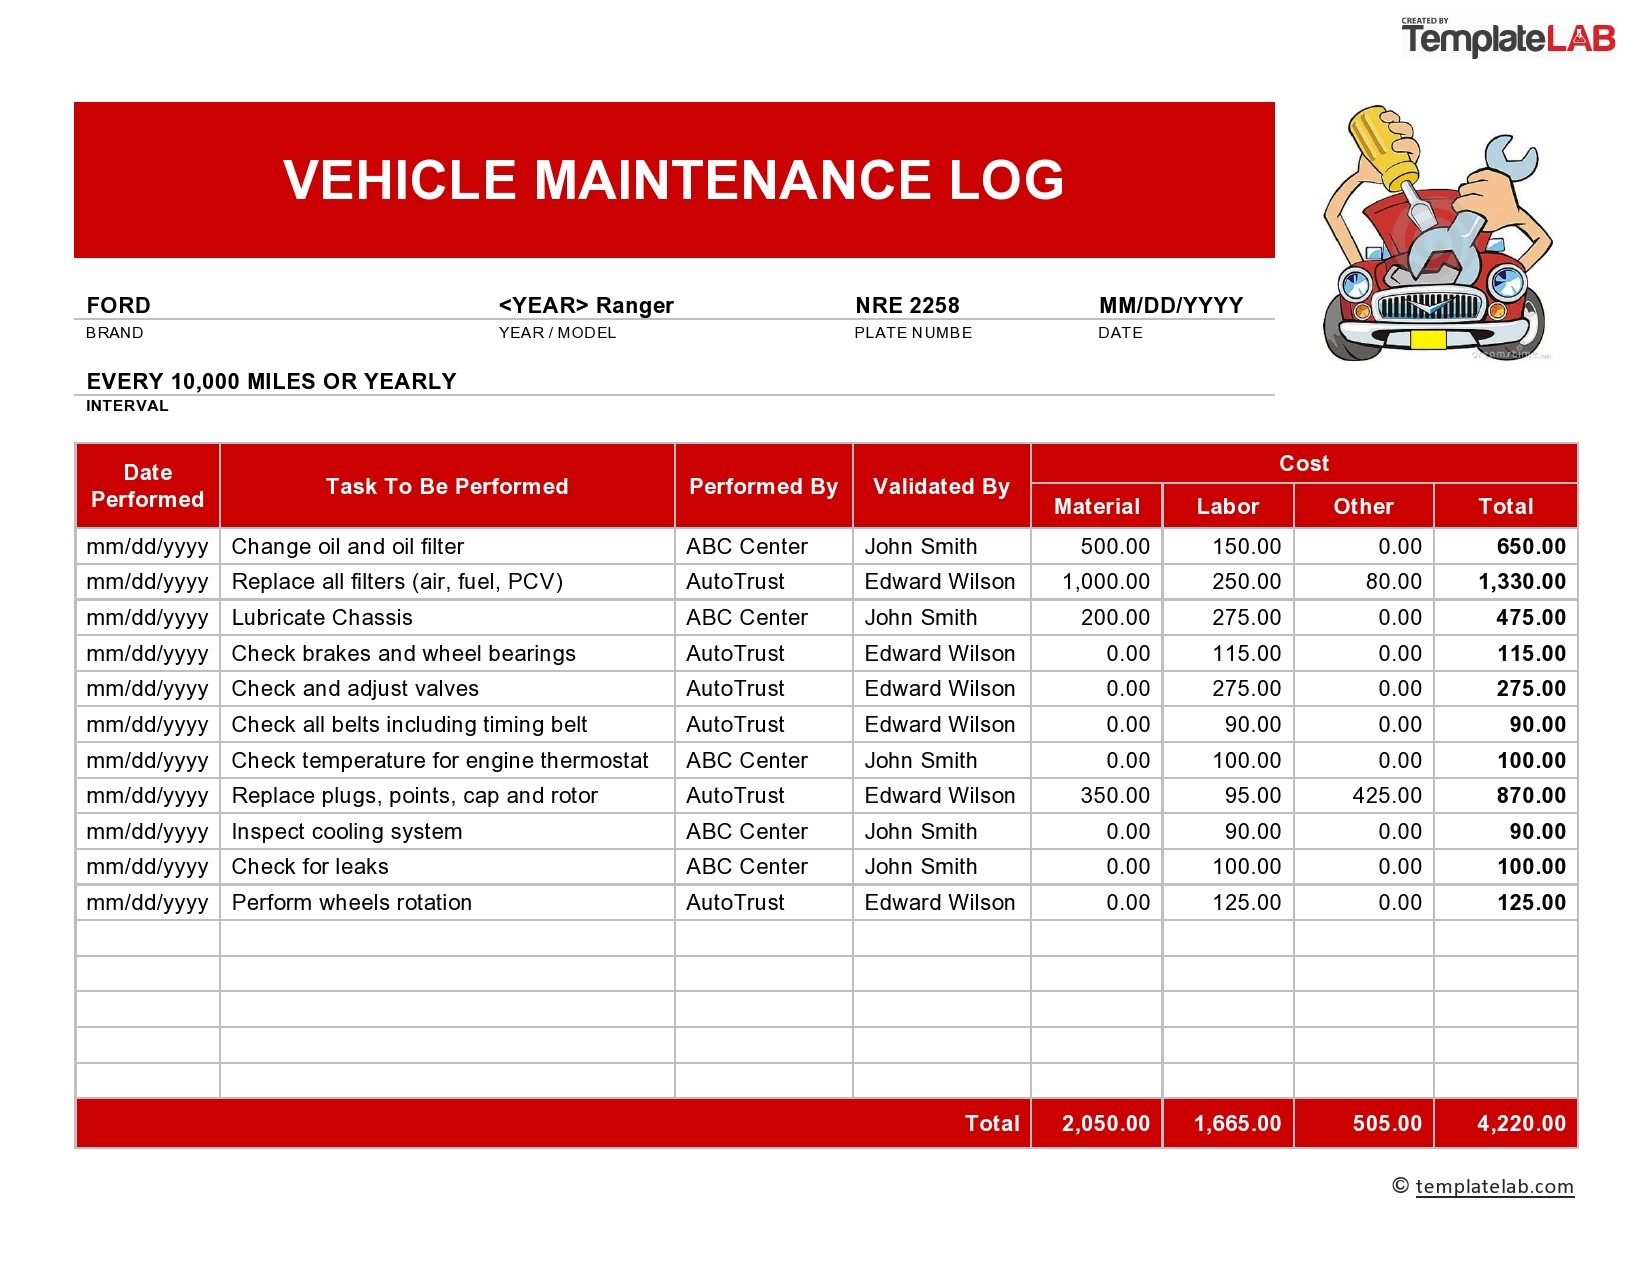 Registro de mantenimiento del vehículo 02